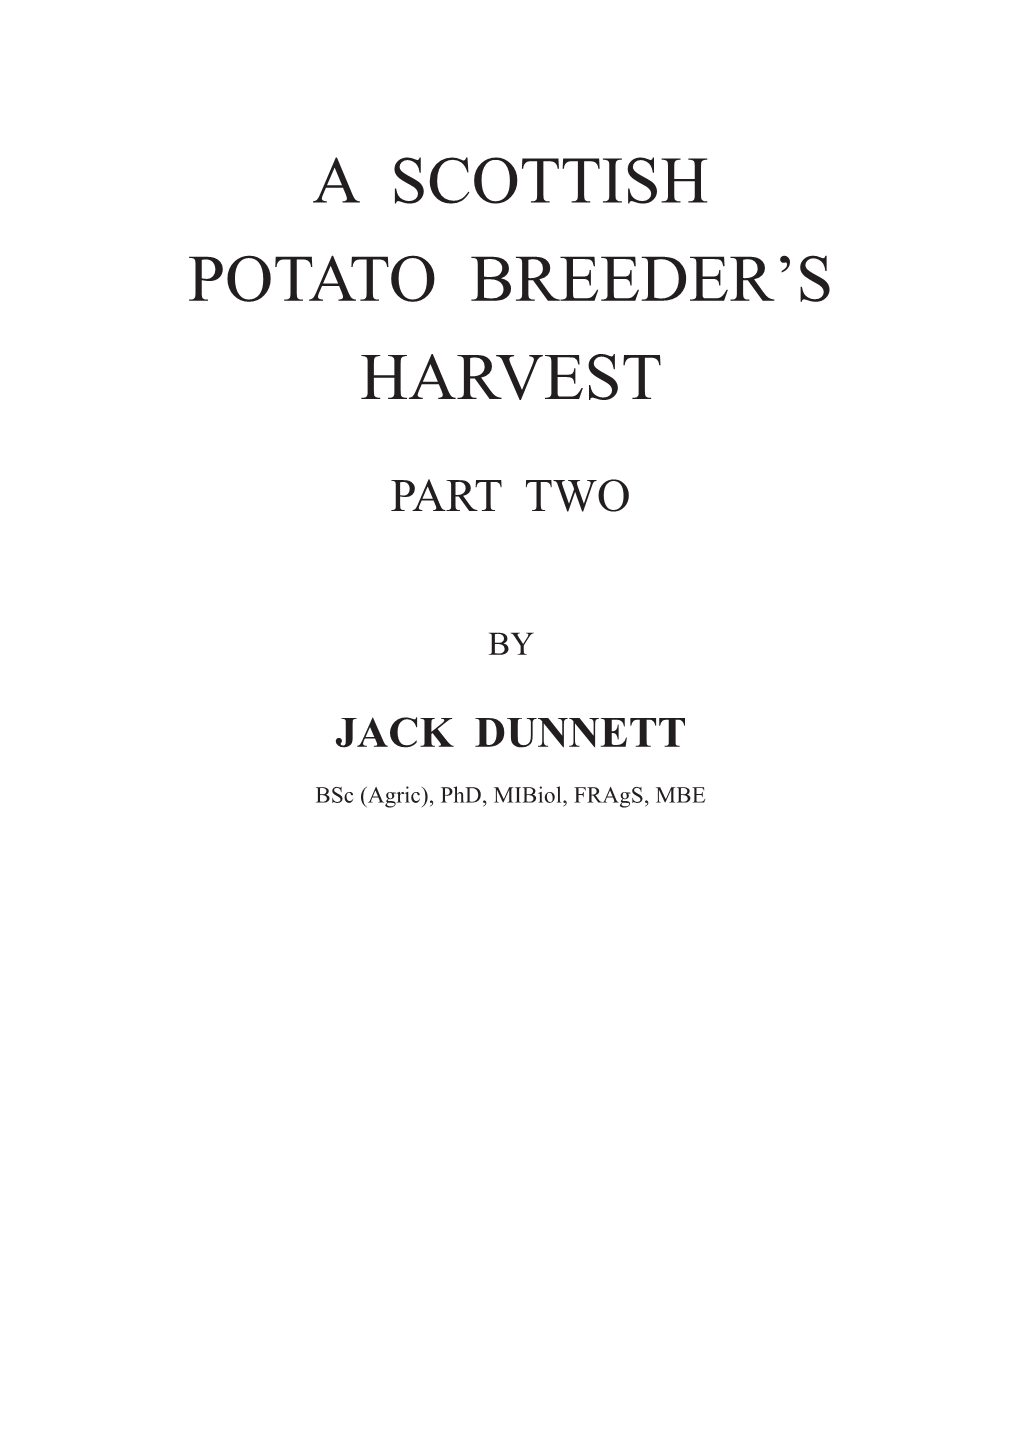 A Scottish Potato Breeder's Harvest